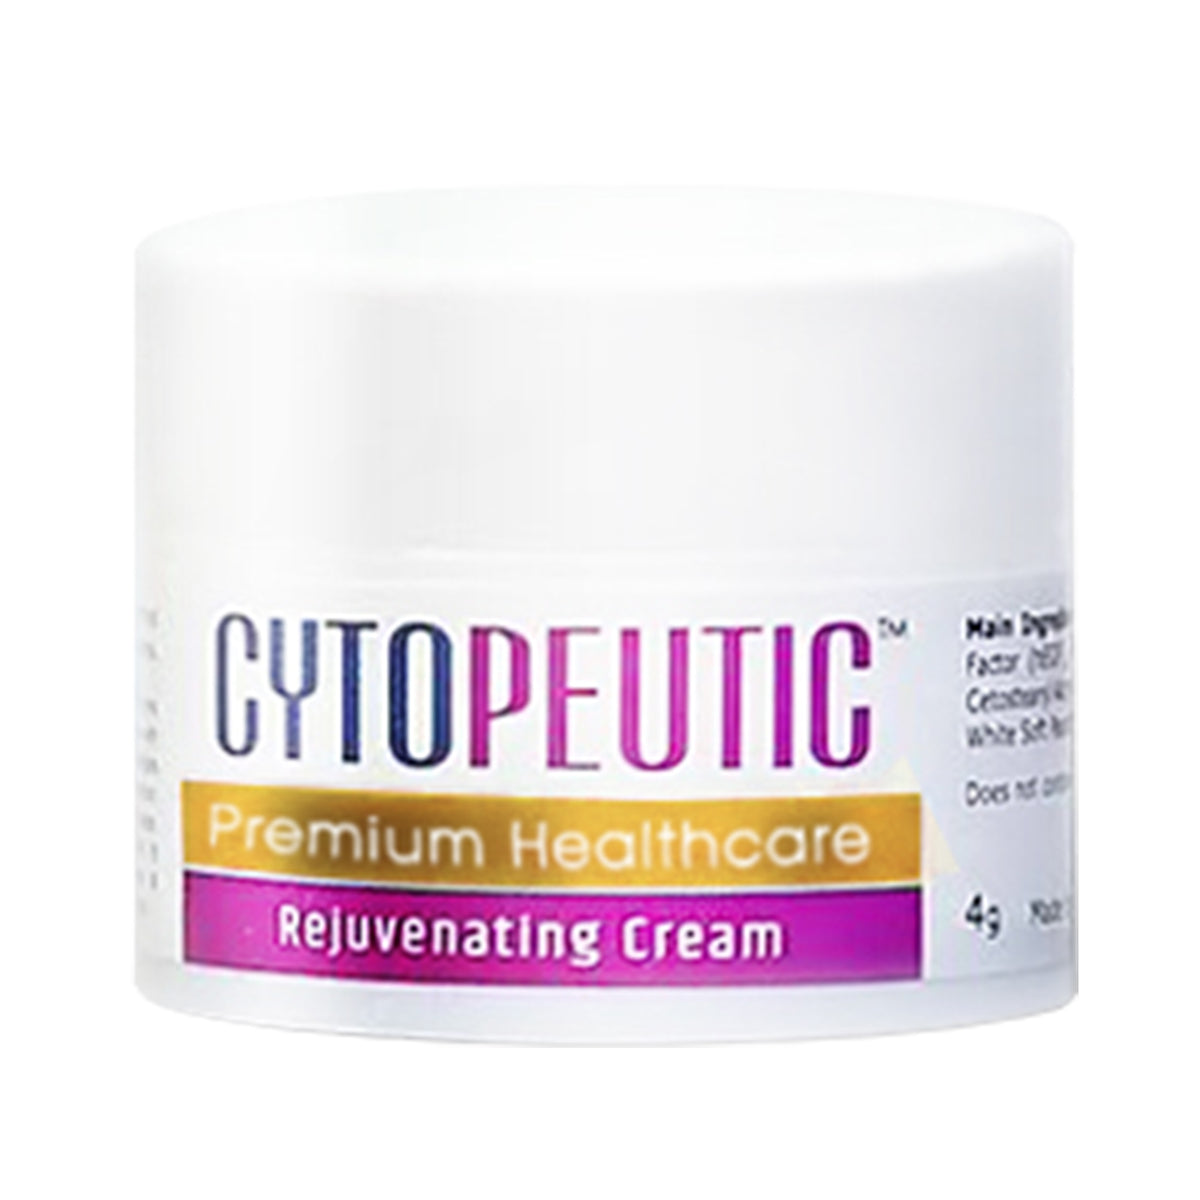 Cytopeutic Premium Healthcare Rejuvenating Cream 高級修復軟膏 4g